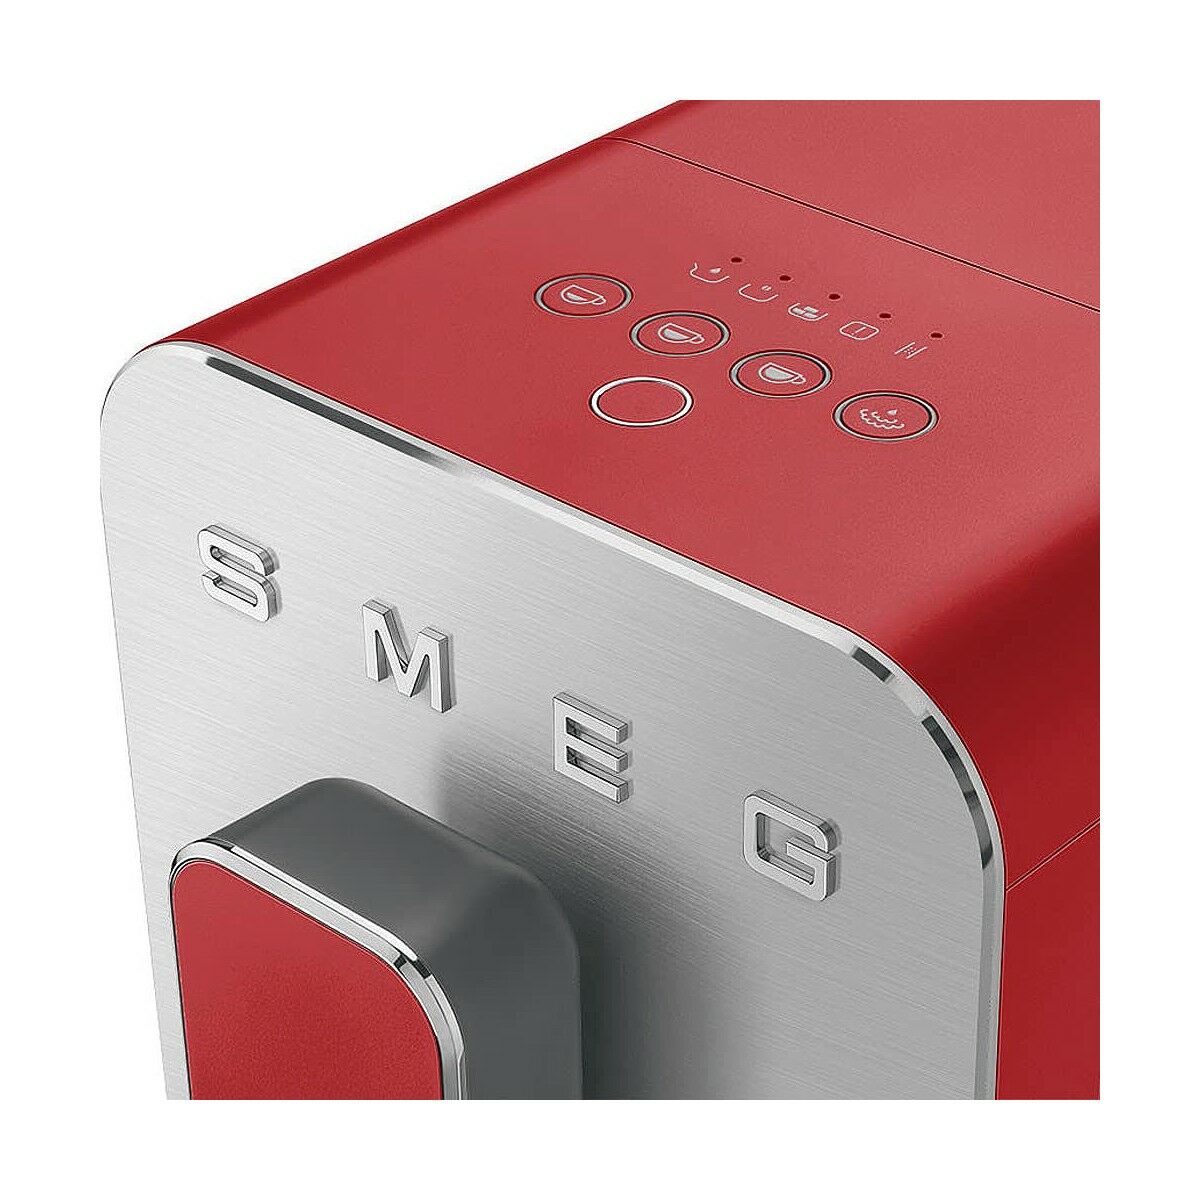 Smeg BCC02RDMEU Superautomatische Kaffeemaschine, Rot, 1350 W, 1,4 l